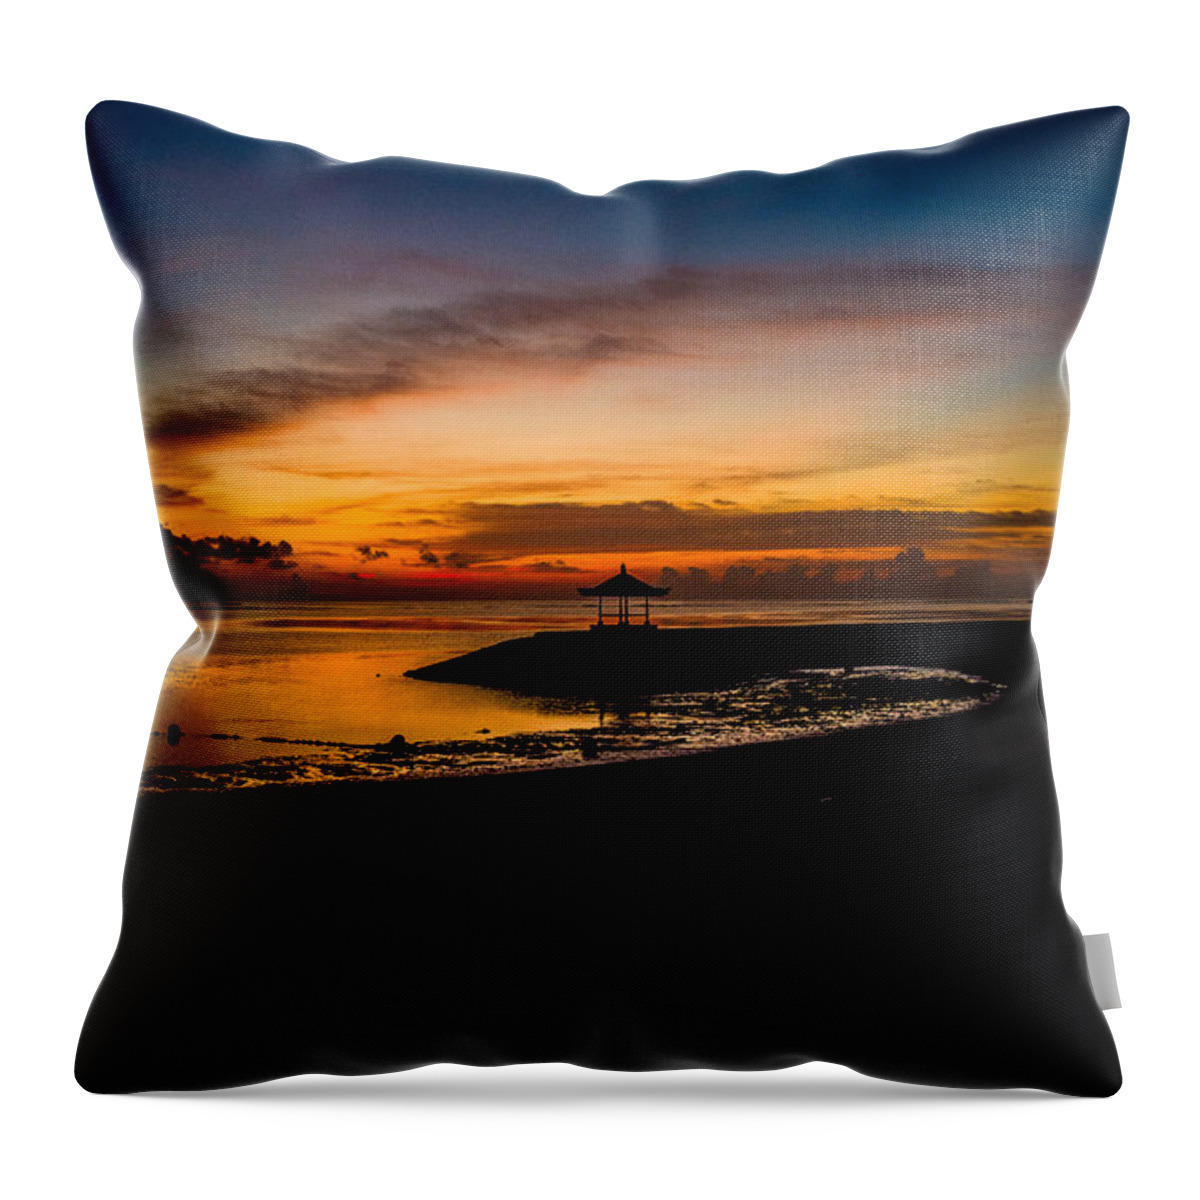 Bali Throw Pillow featuring the photograph Bali Beach Sunrise by M G Whittingham